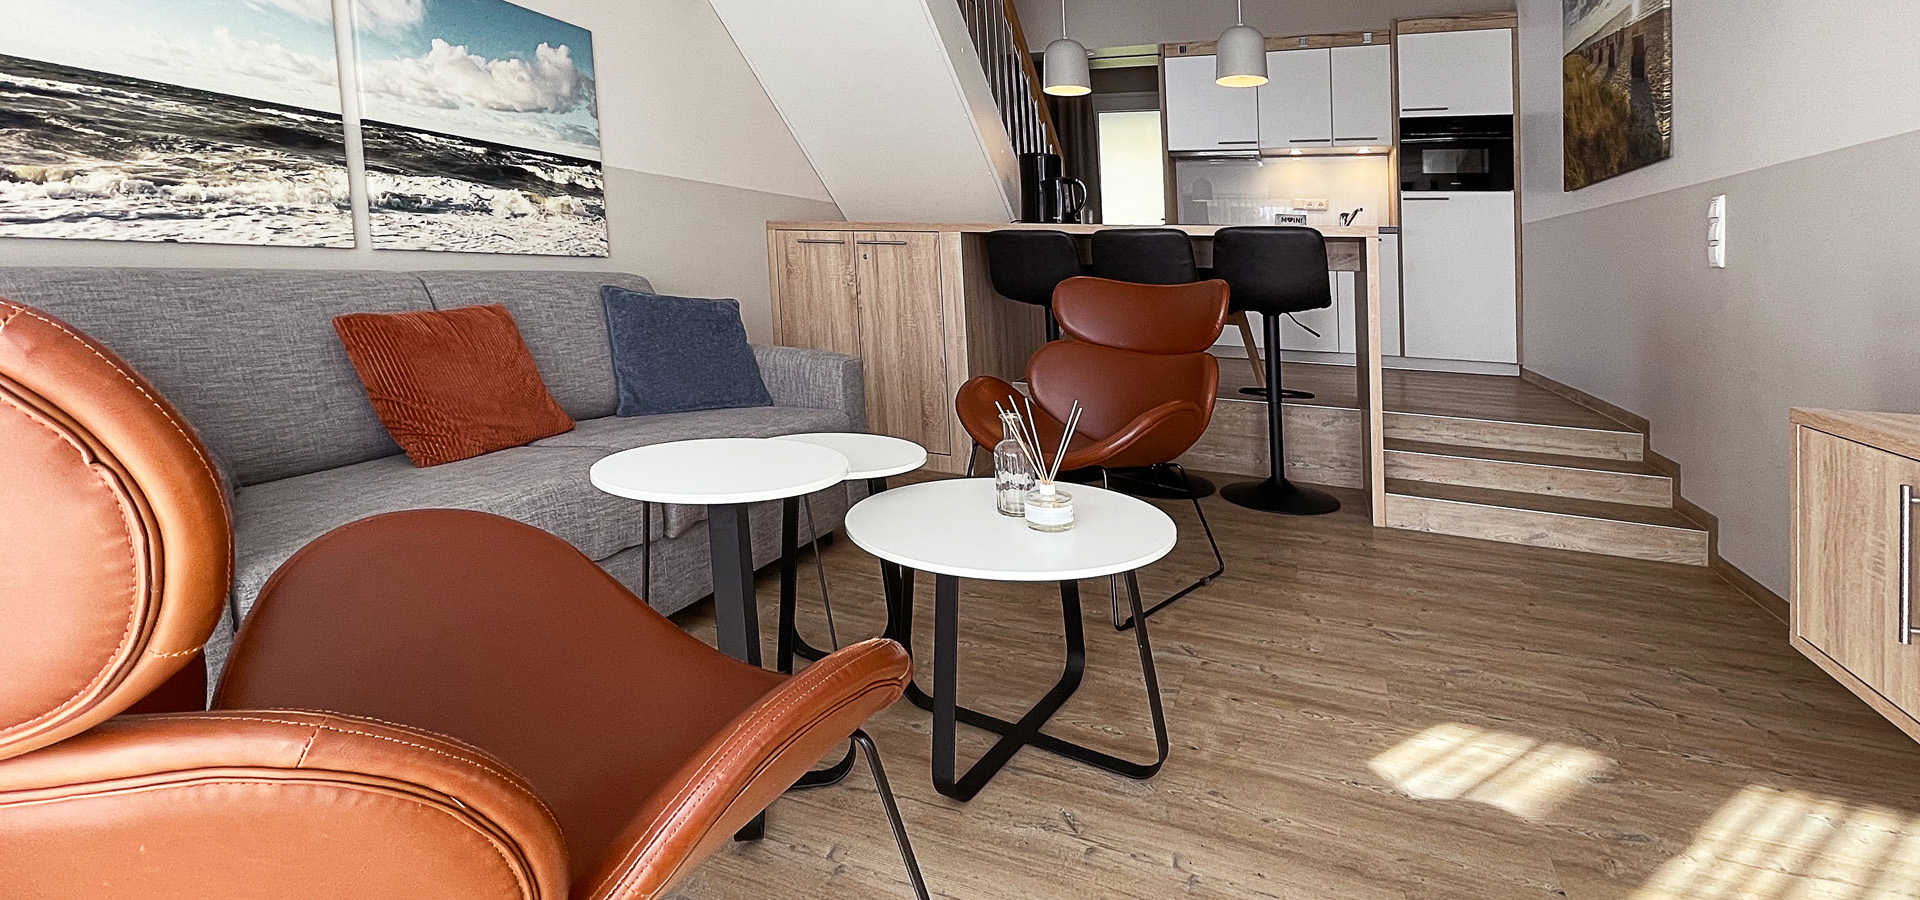 Komfort Ferienhaus 44 m² für bis zu 5 Personen an der Ostsee